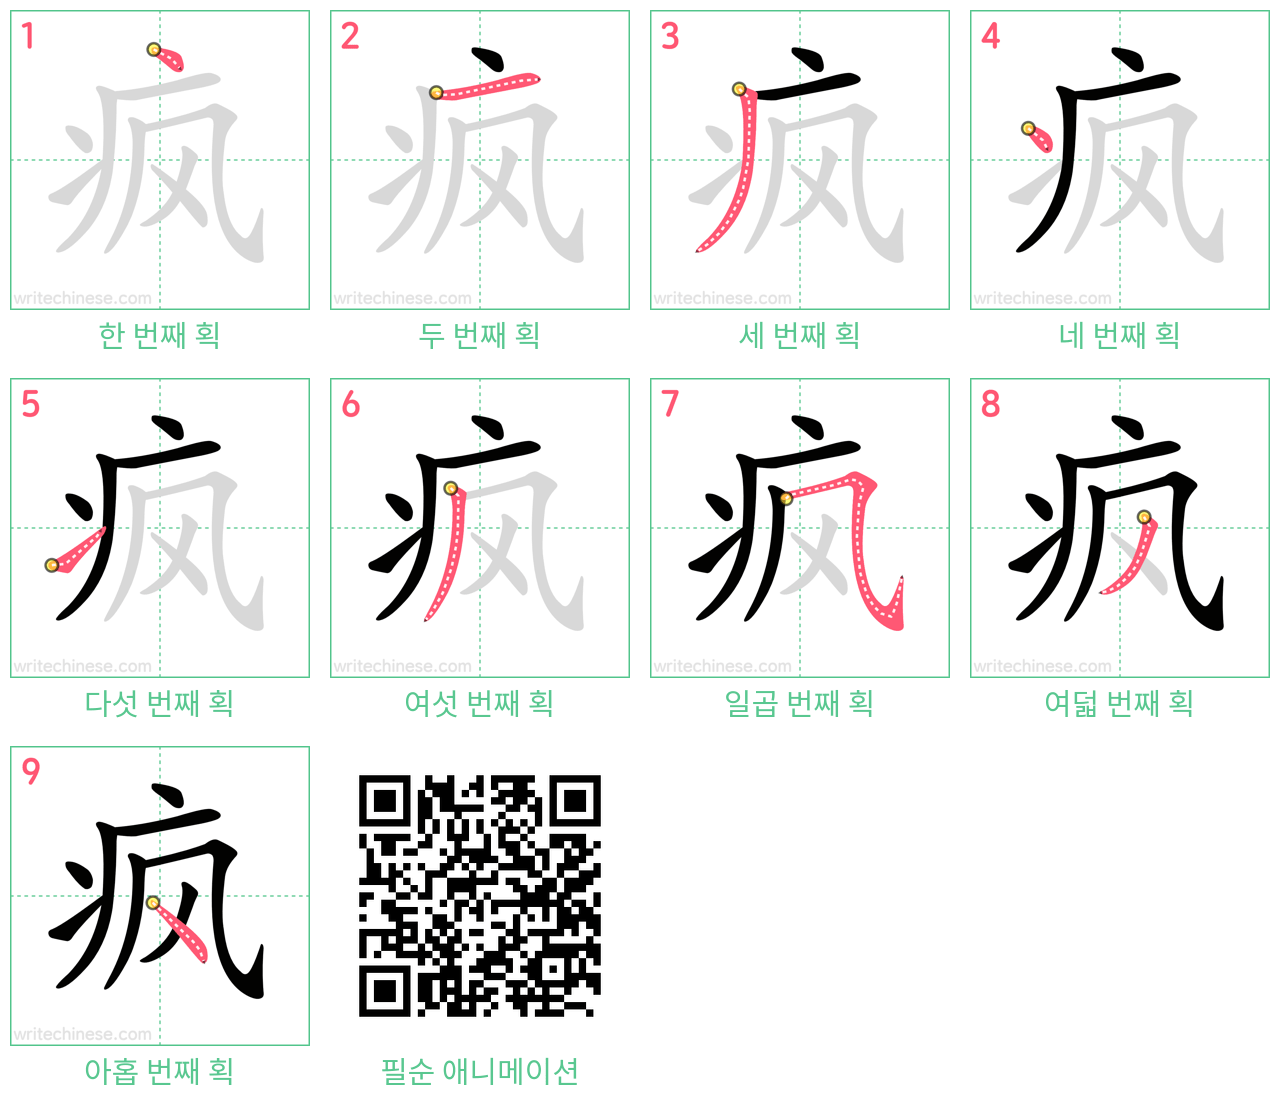 疯 step-by-step stroke order diagrams